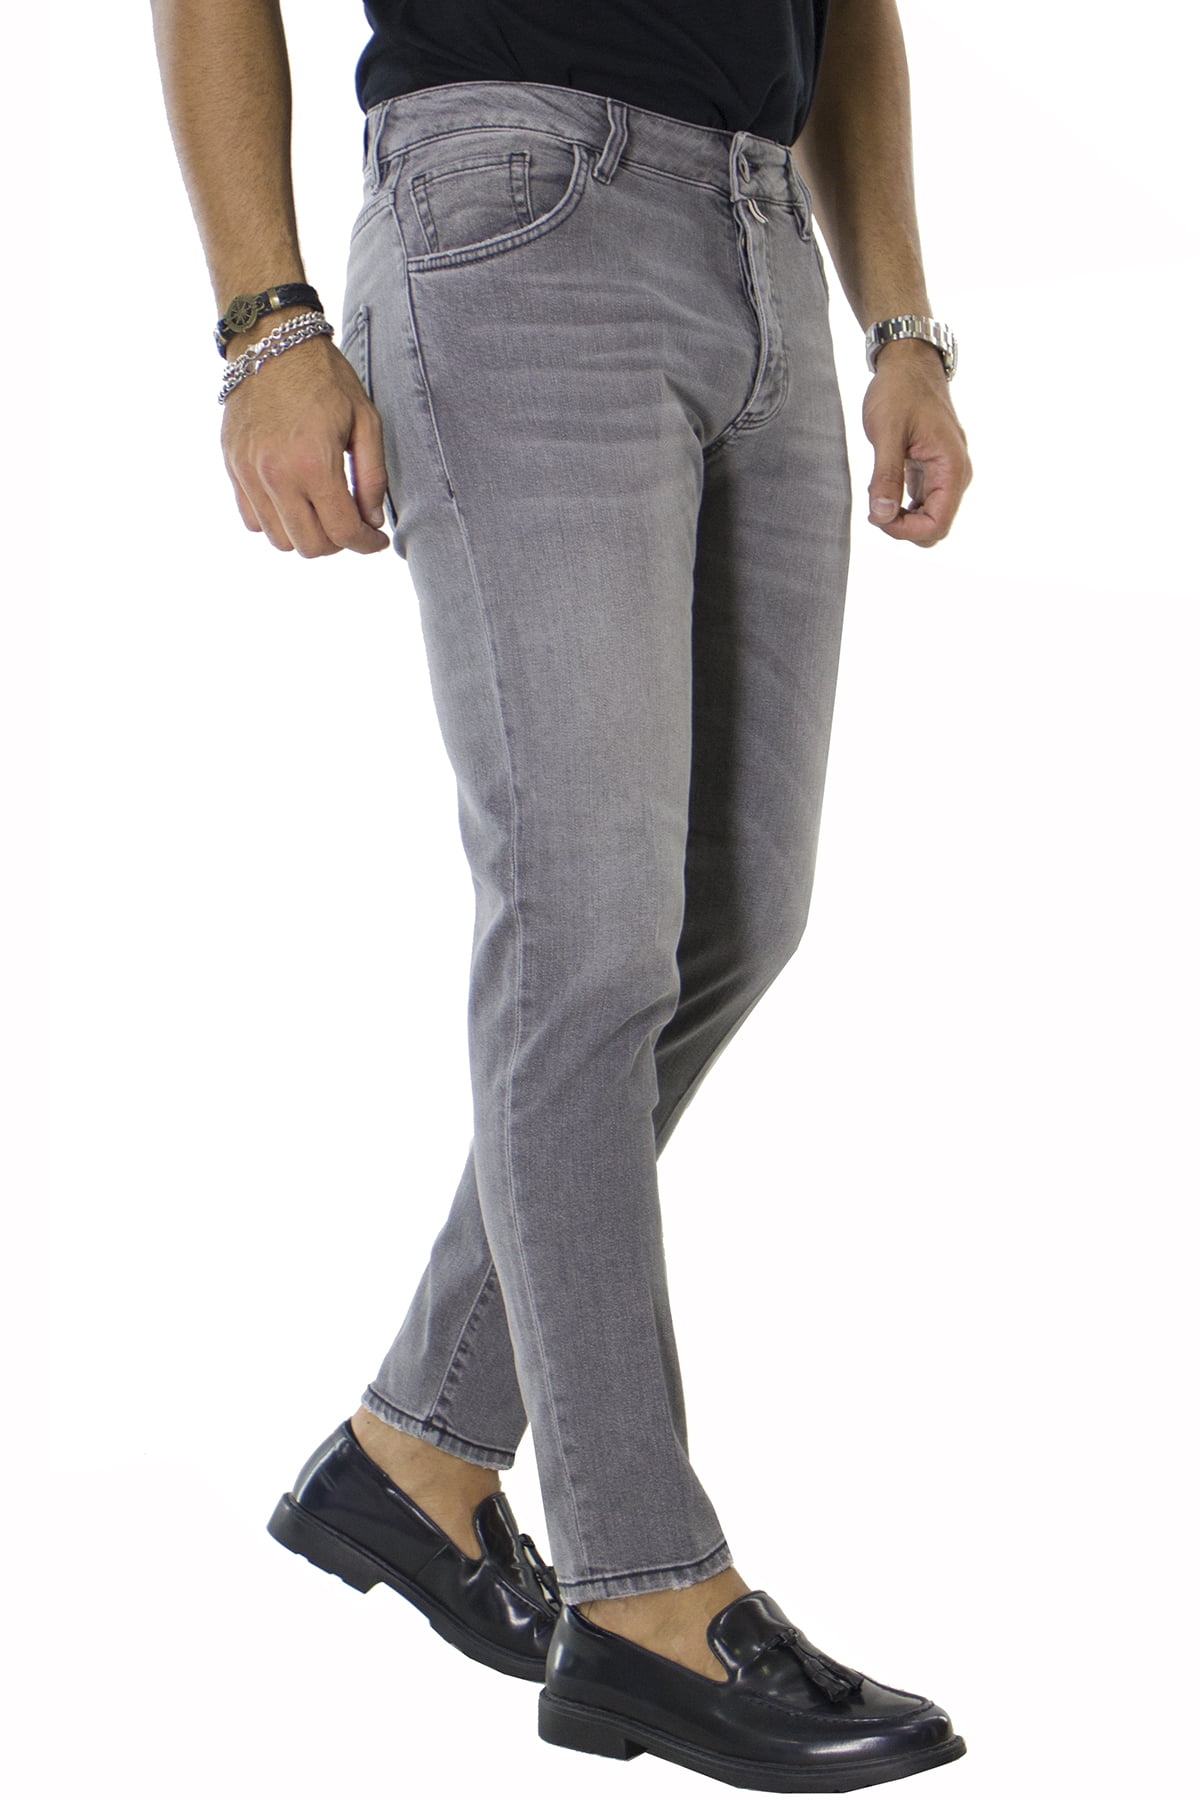 Jeans uomo slim grigio chiaro elasticizzato con sabbiature 5 tasche